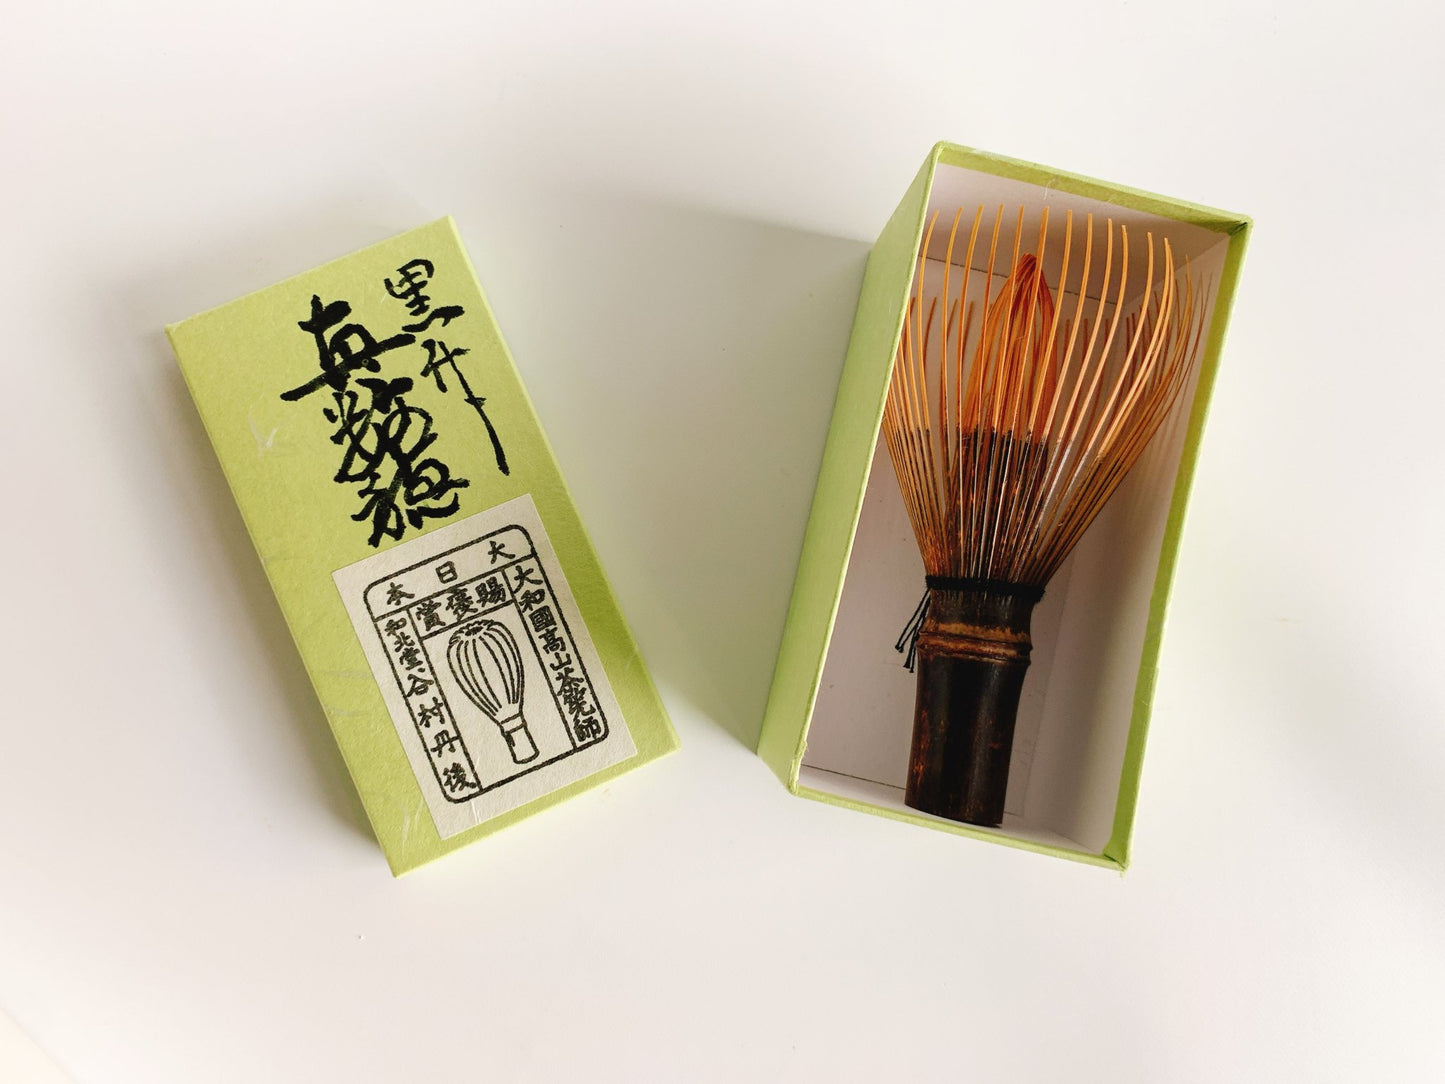 Japanese Kazuho Bamboo Matcha Whisk